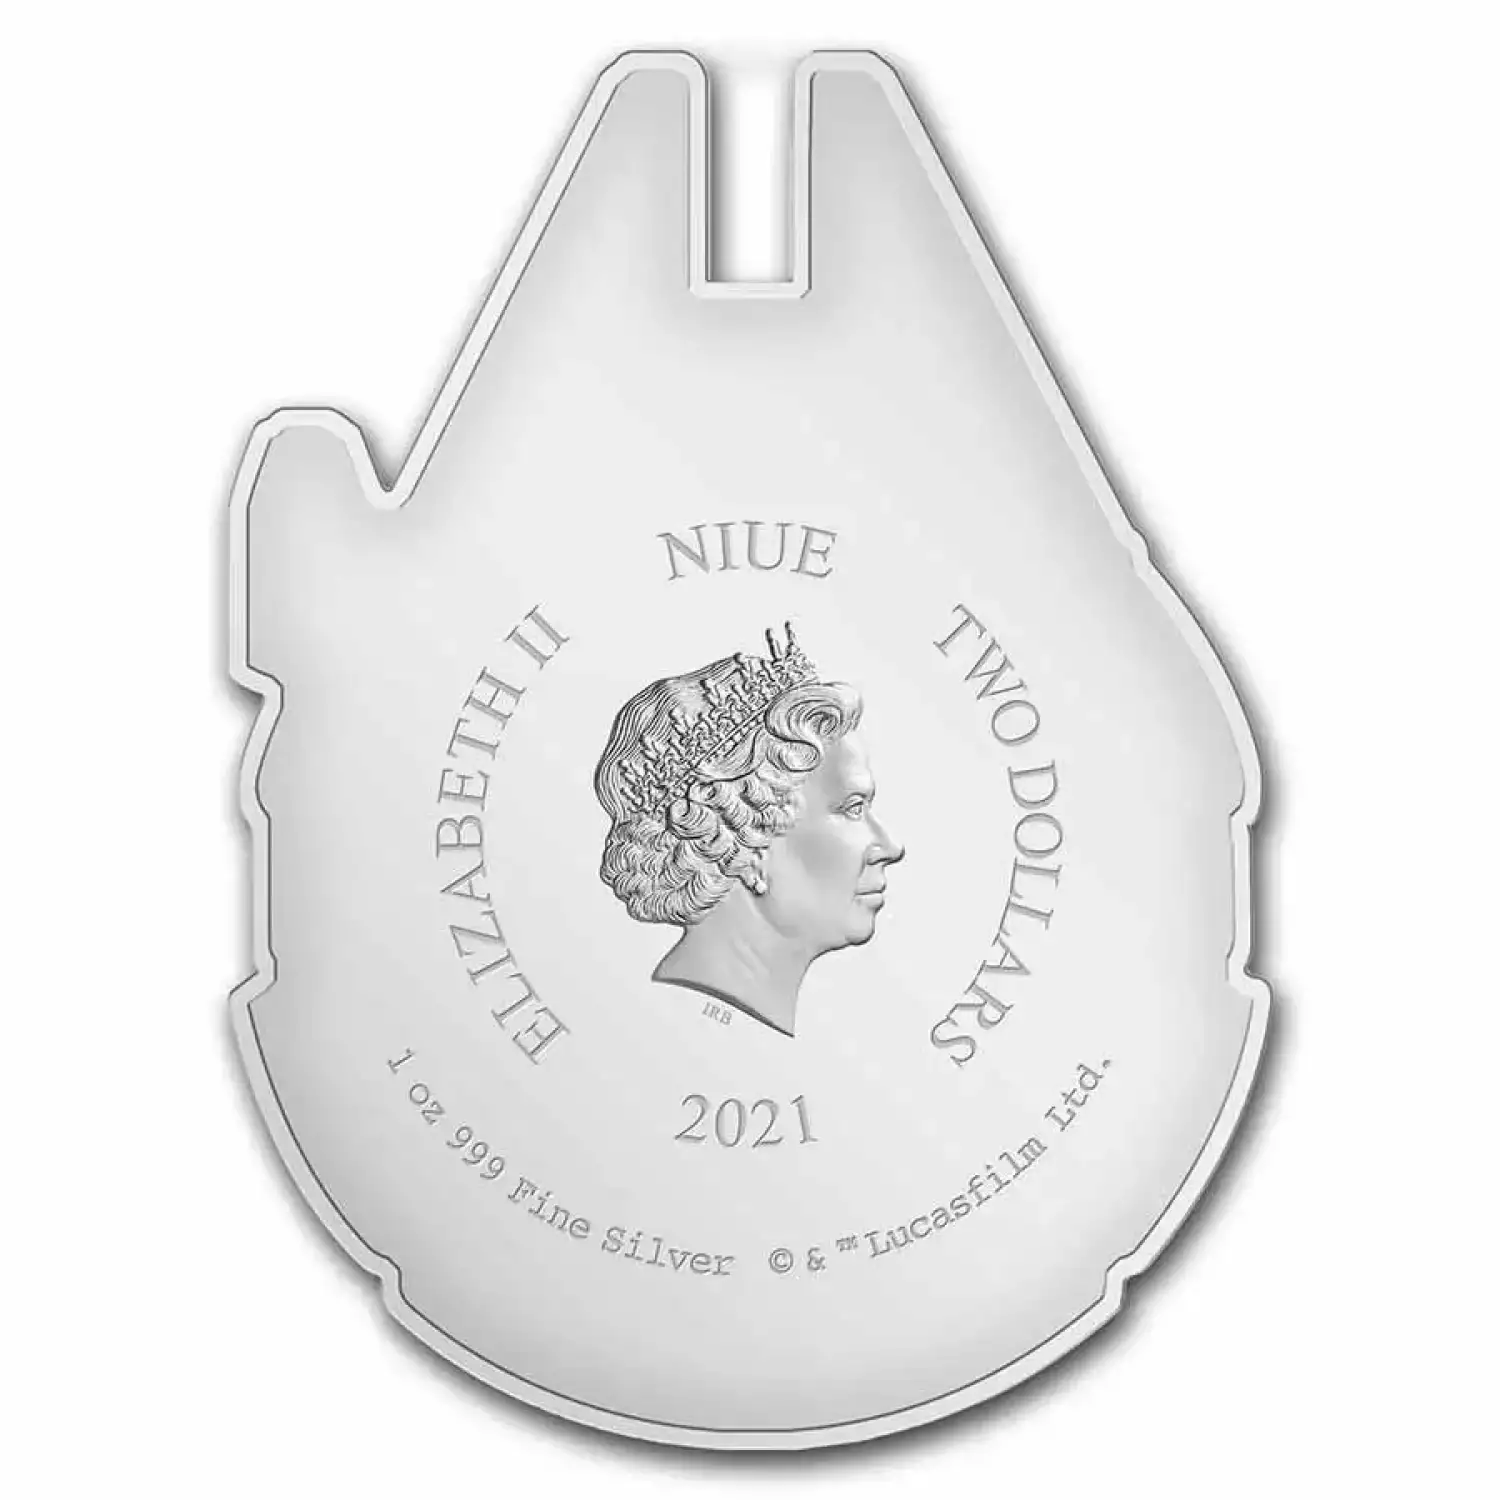 2021 Niue 1 oz Silver $2 Star Wars Millennium Falcon Shaped Coin (3)